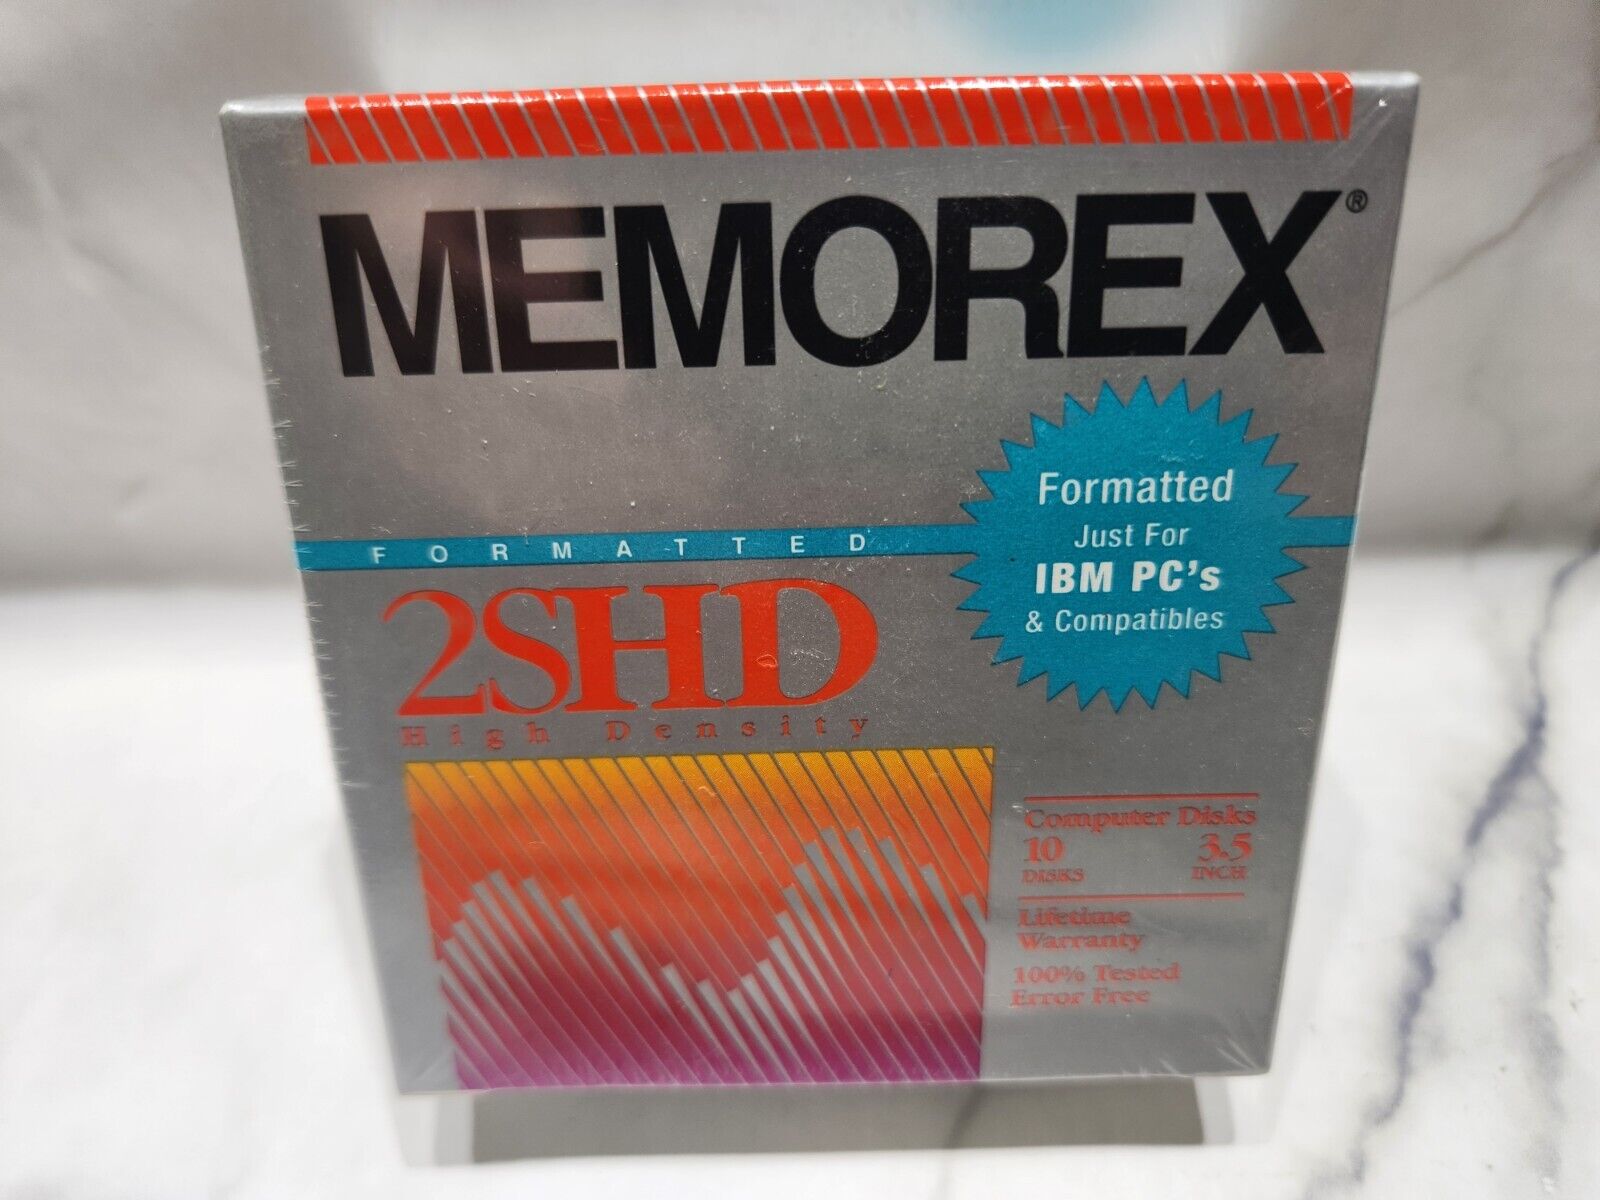 Memorex 10 Pack 3.5